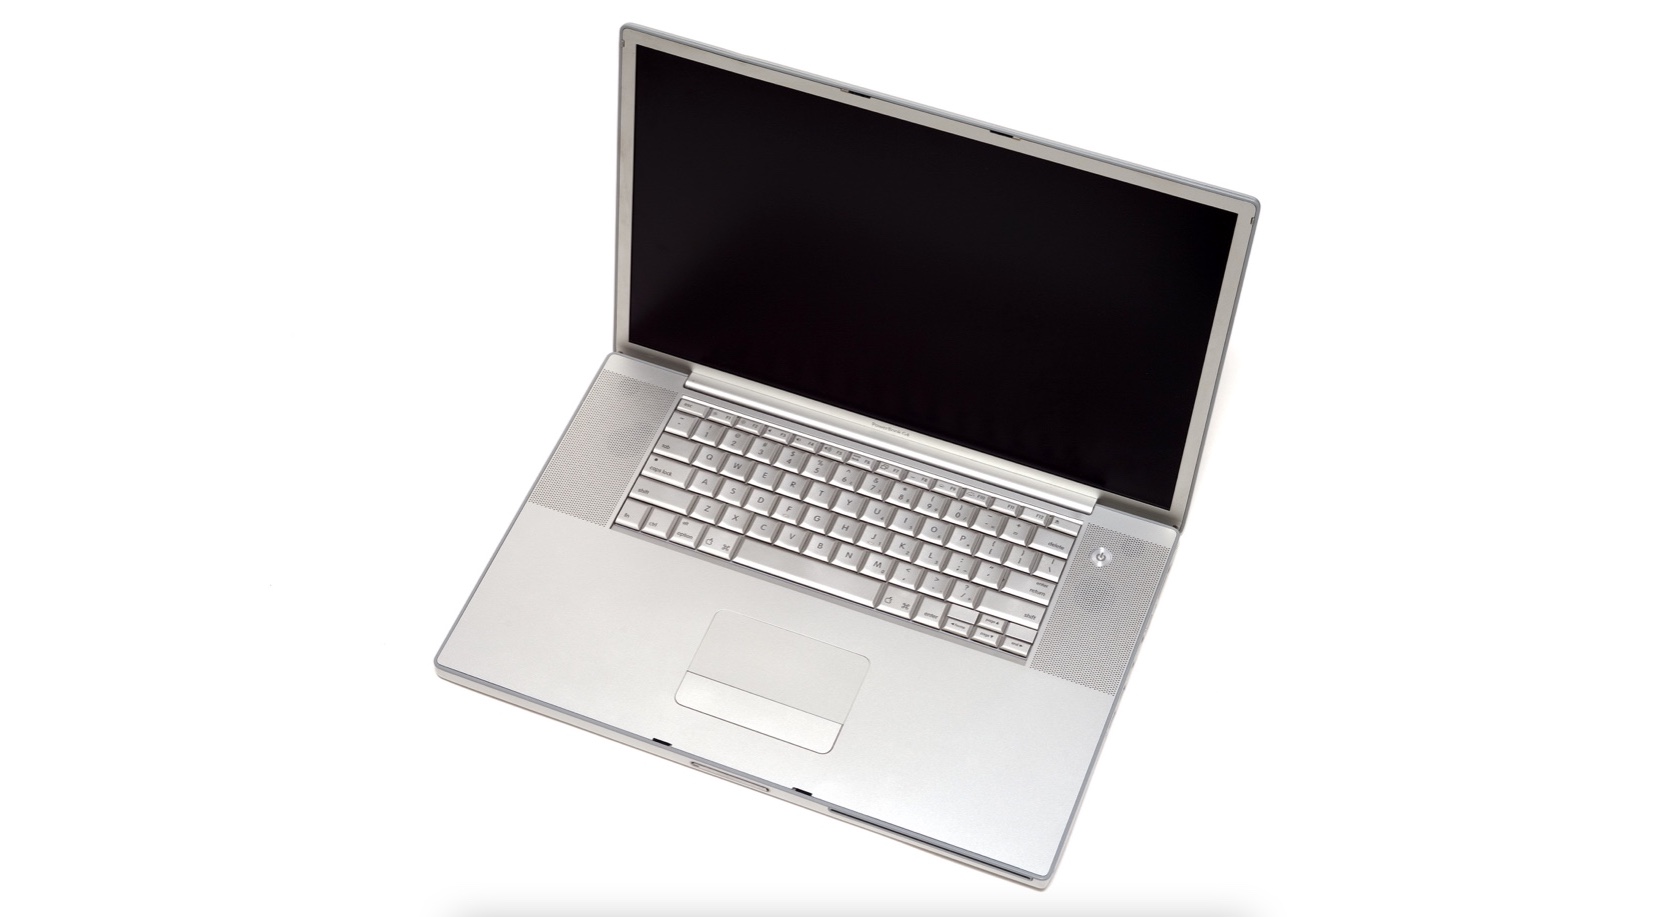 PowerBook G4 Titanium